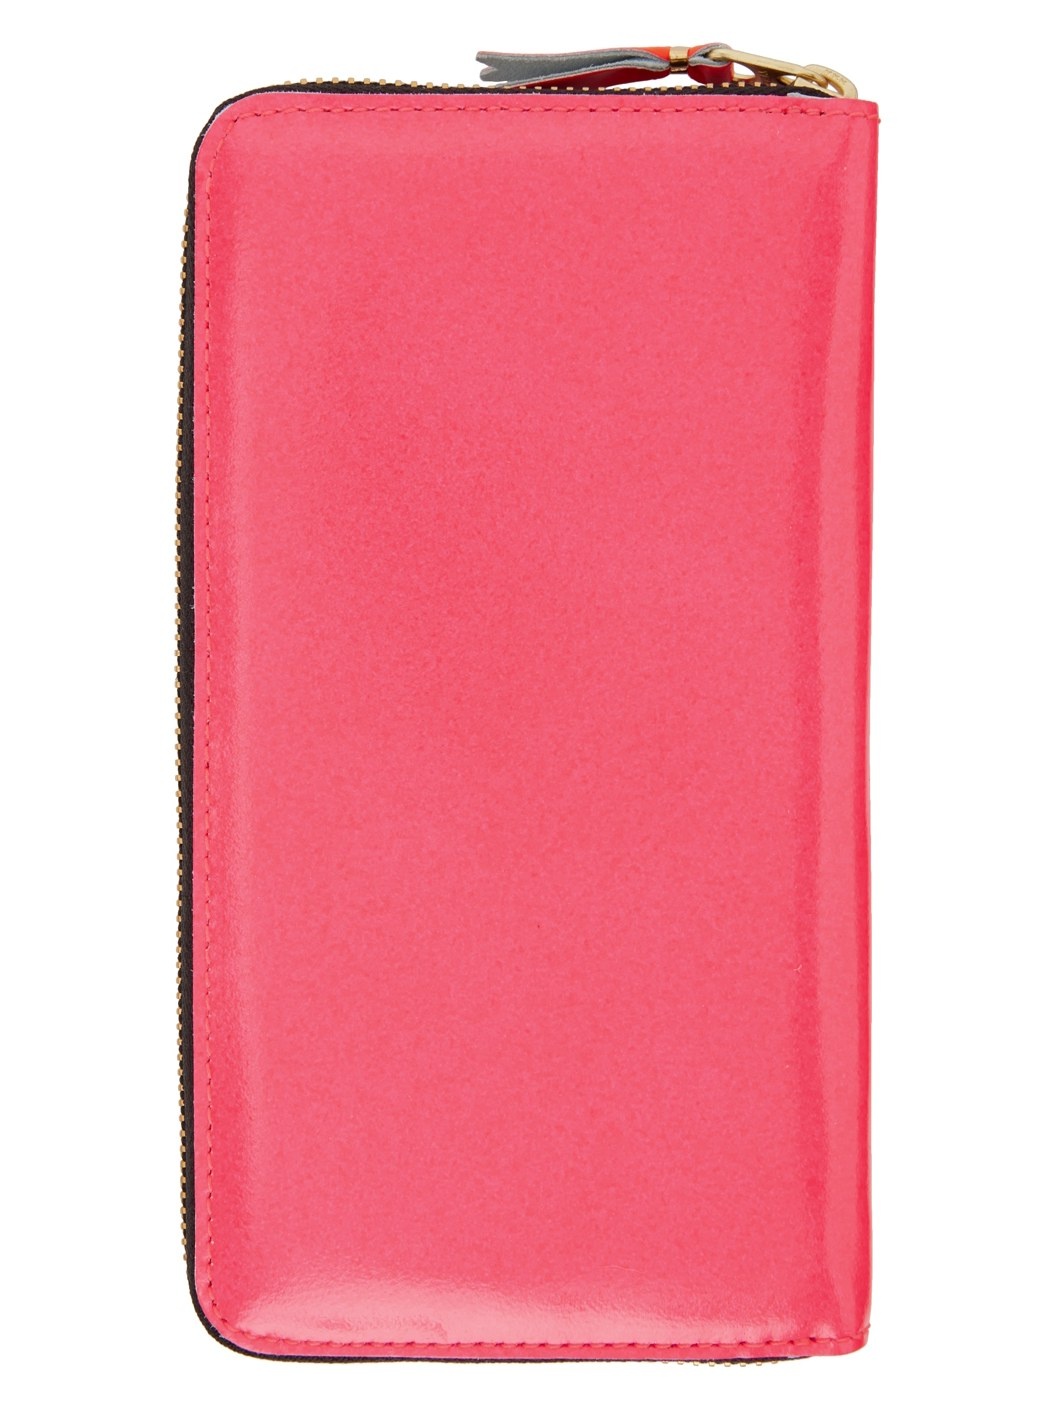 Pink Super Fluo Zip Wallet - 2